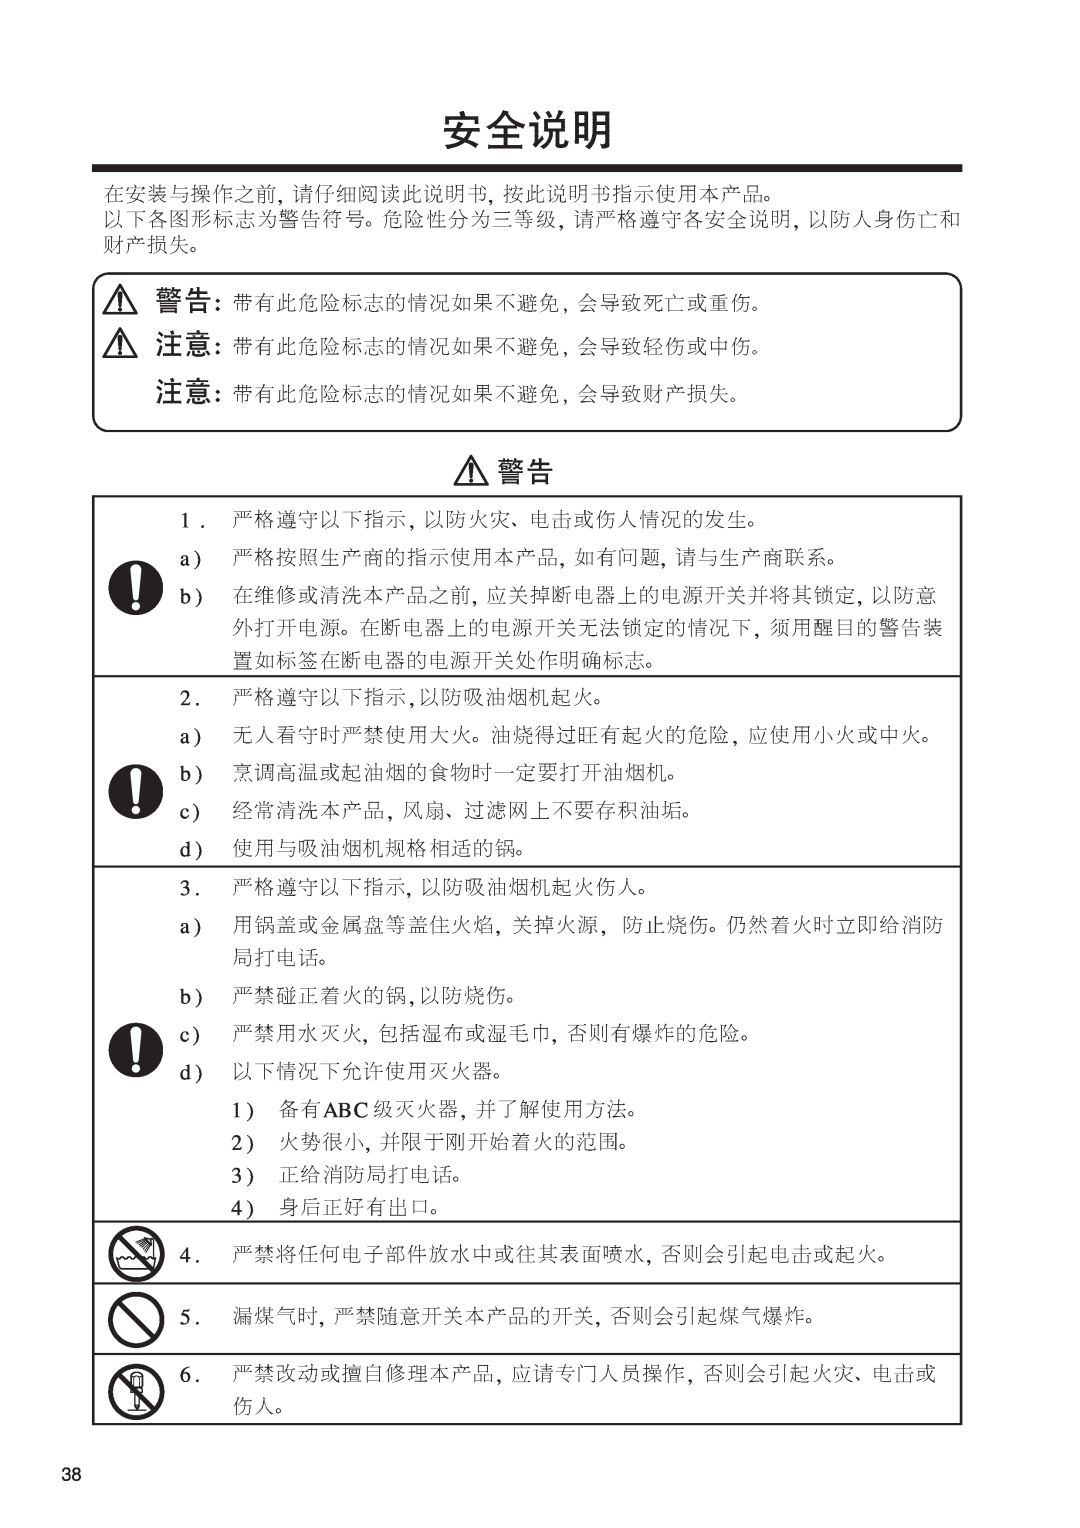 Fujioh FDR-4200D operation manual ABC 2 